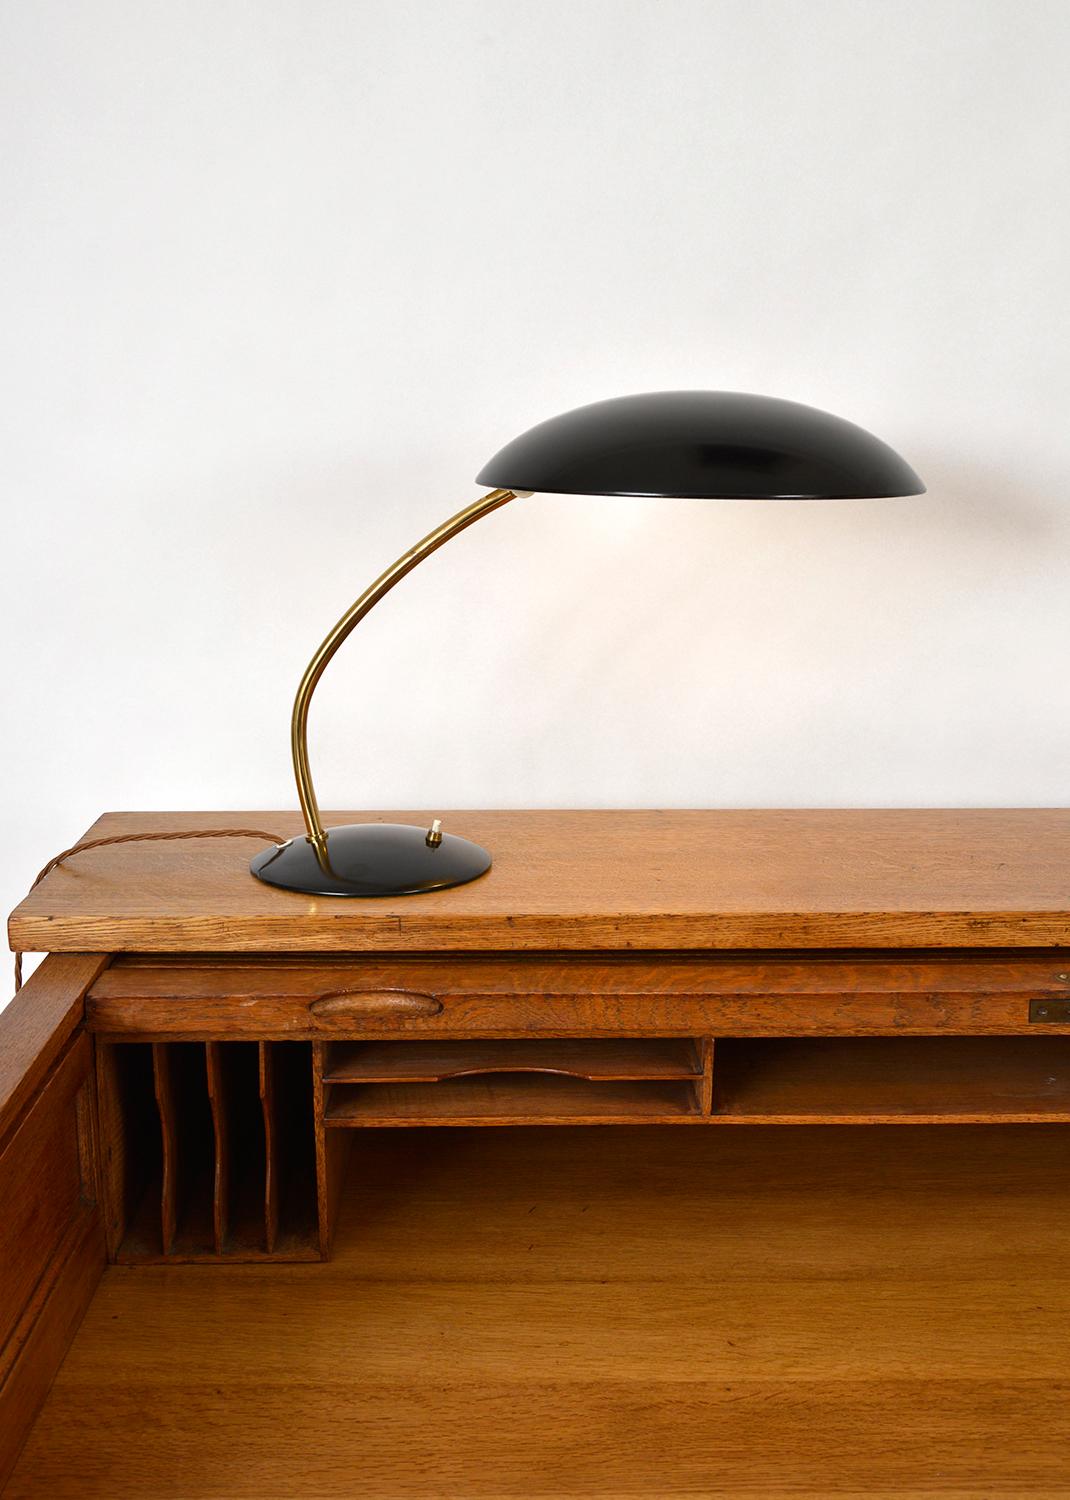 Bauhaus Midcentury Kaiser Idell Desk Task Lamp by Christian Dell Model 6782 German 1950s For Sale